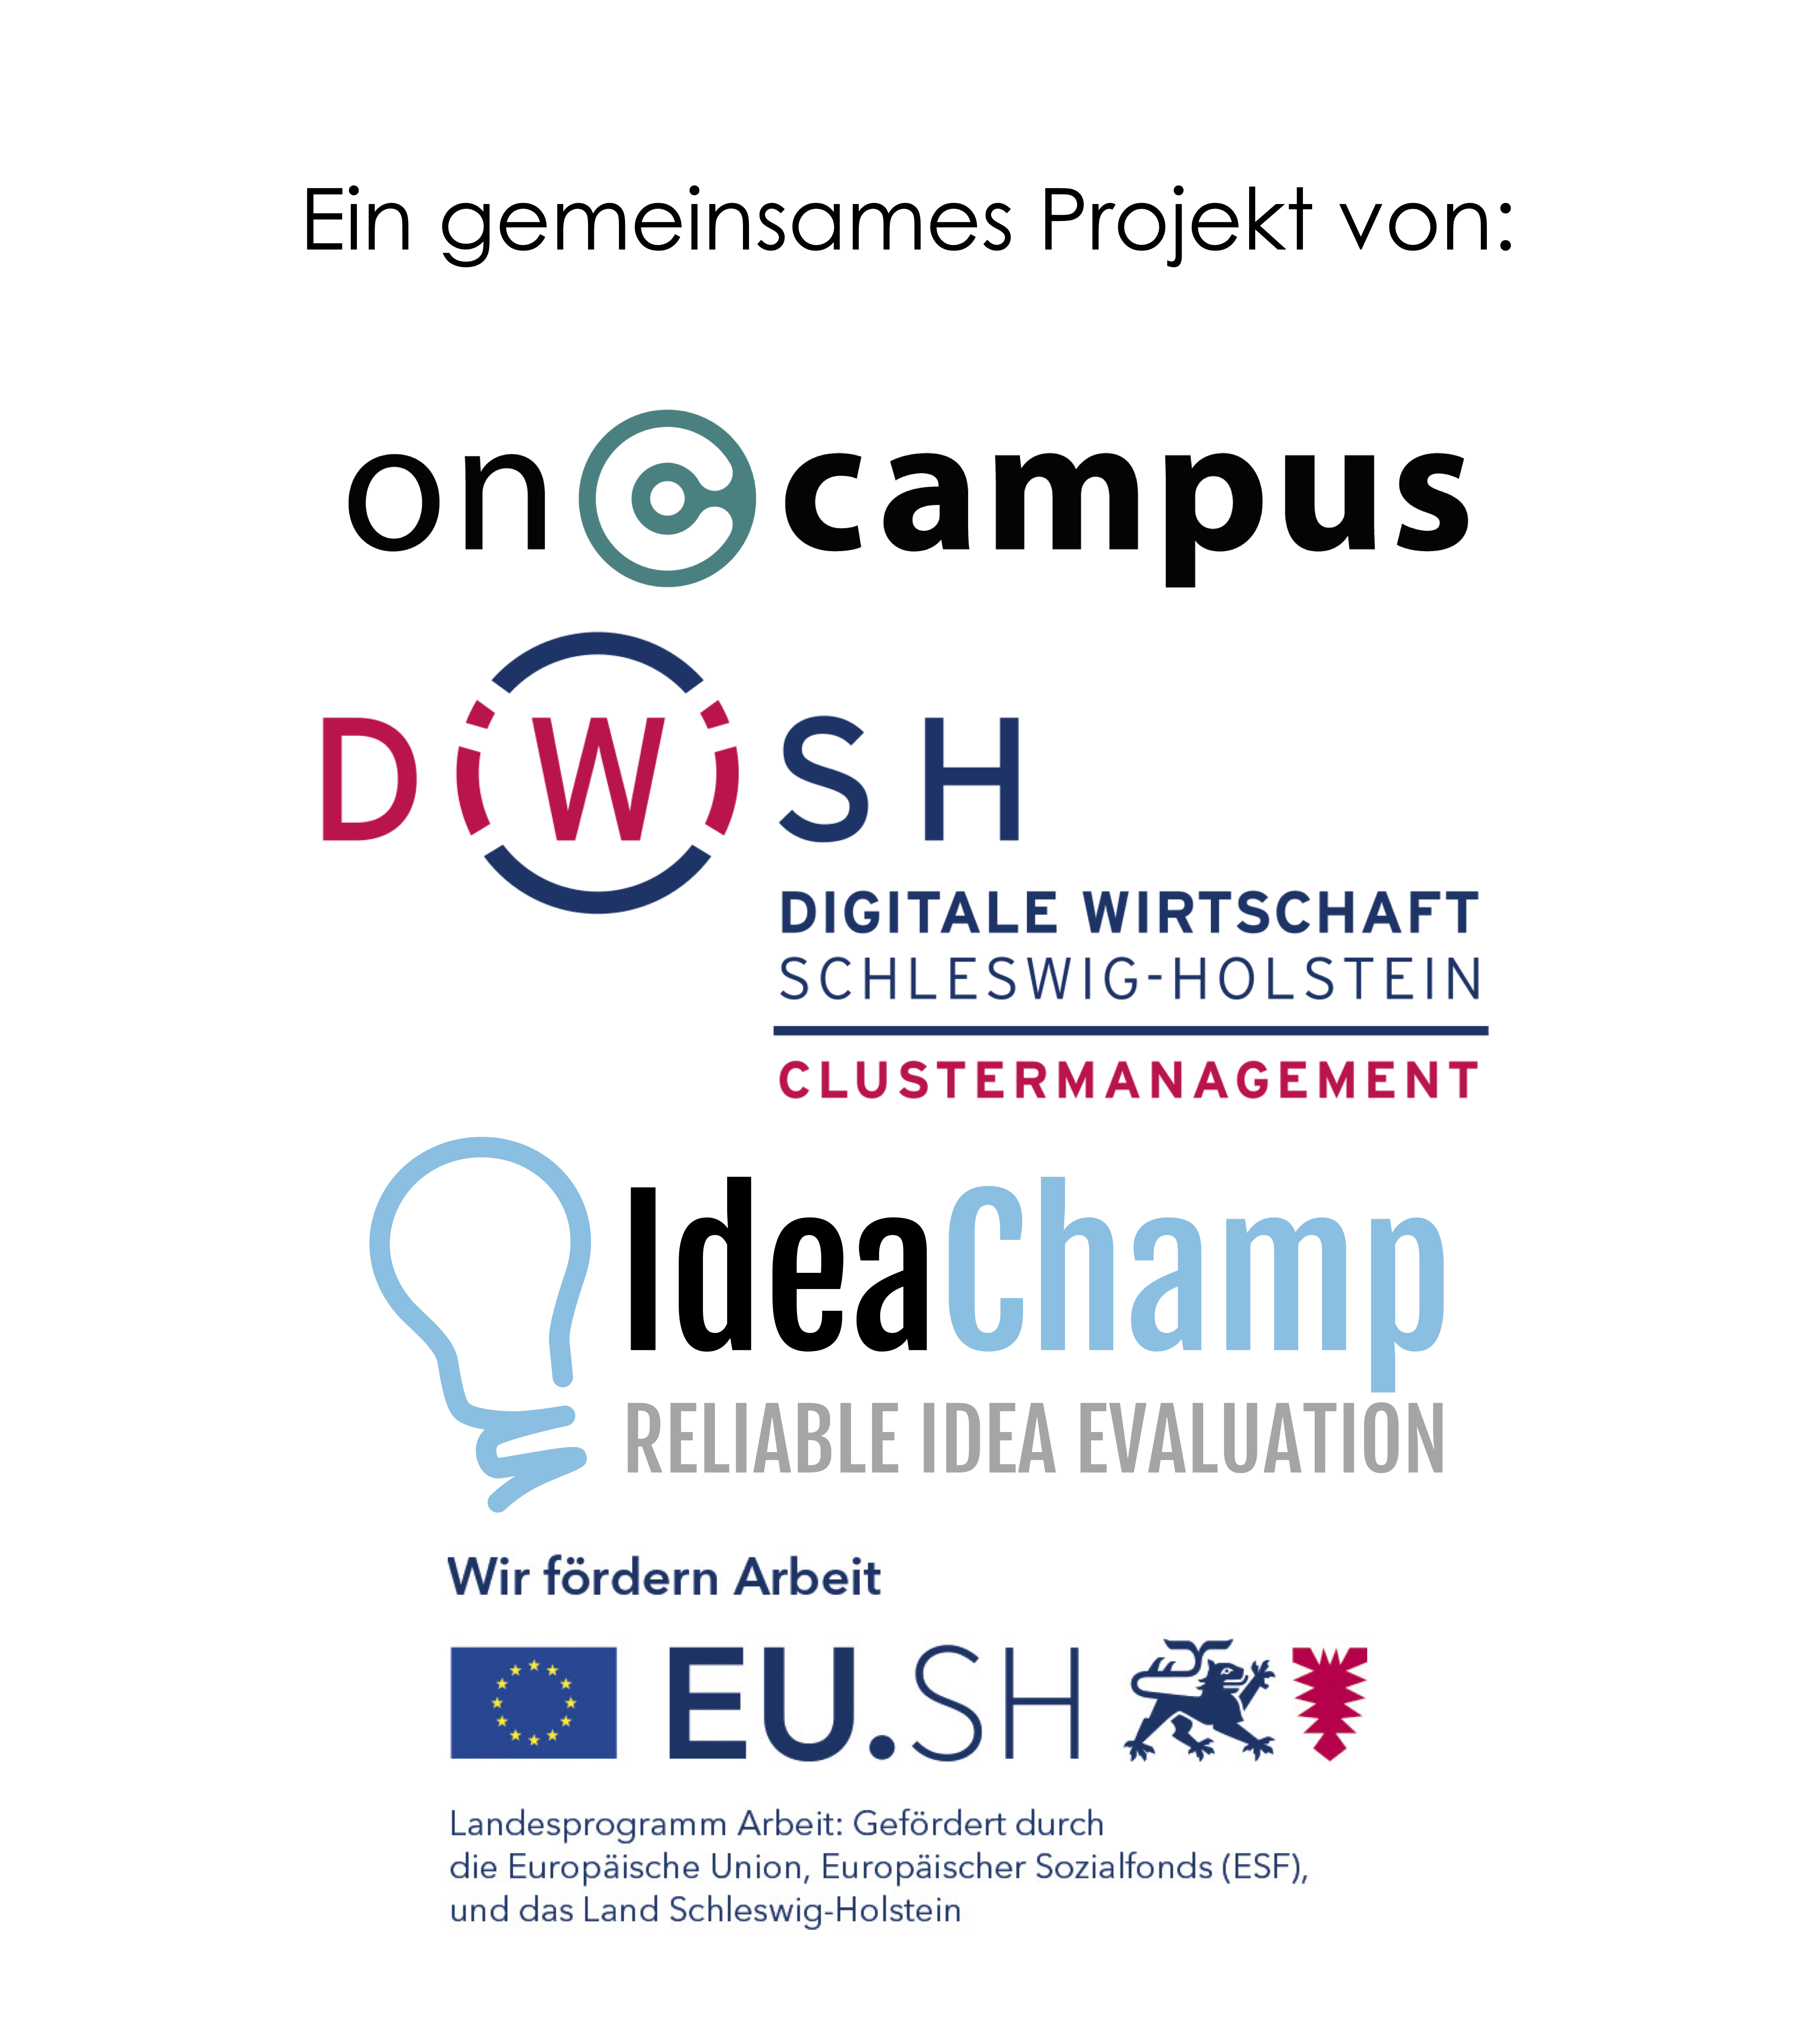 RebootSH: ein gemeinsames Projekt von oncampus, DiWiSH und IdeaChamp